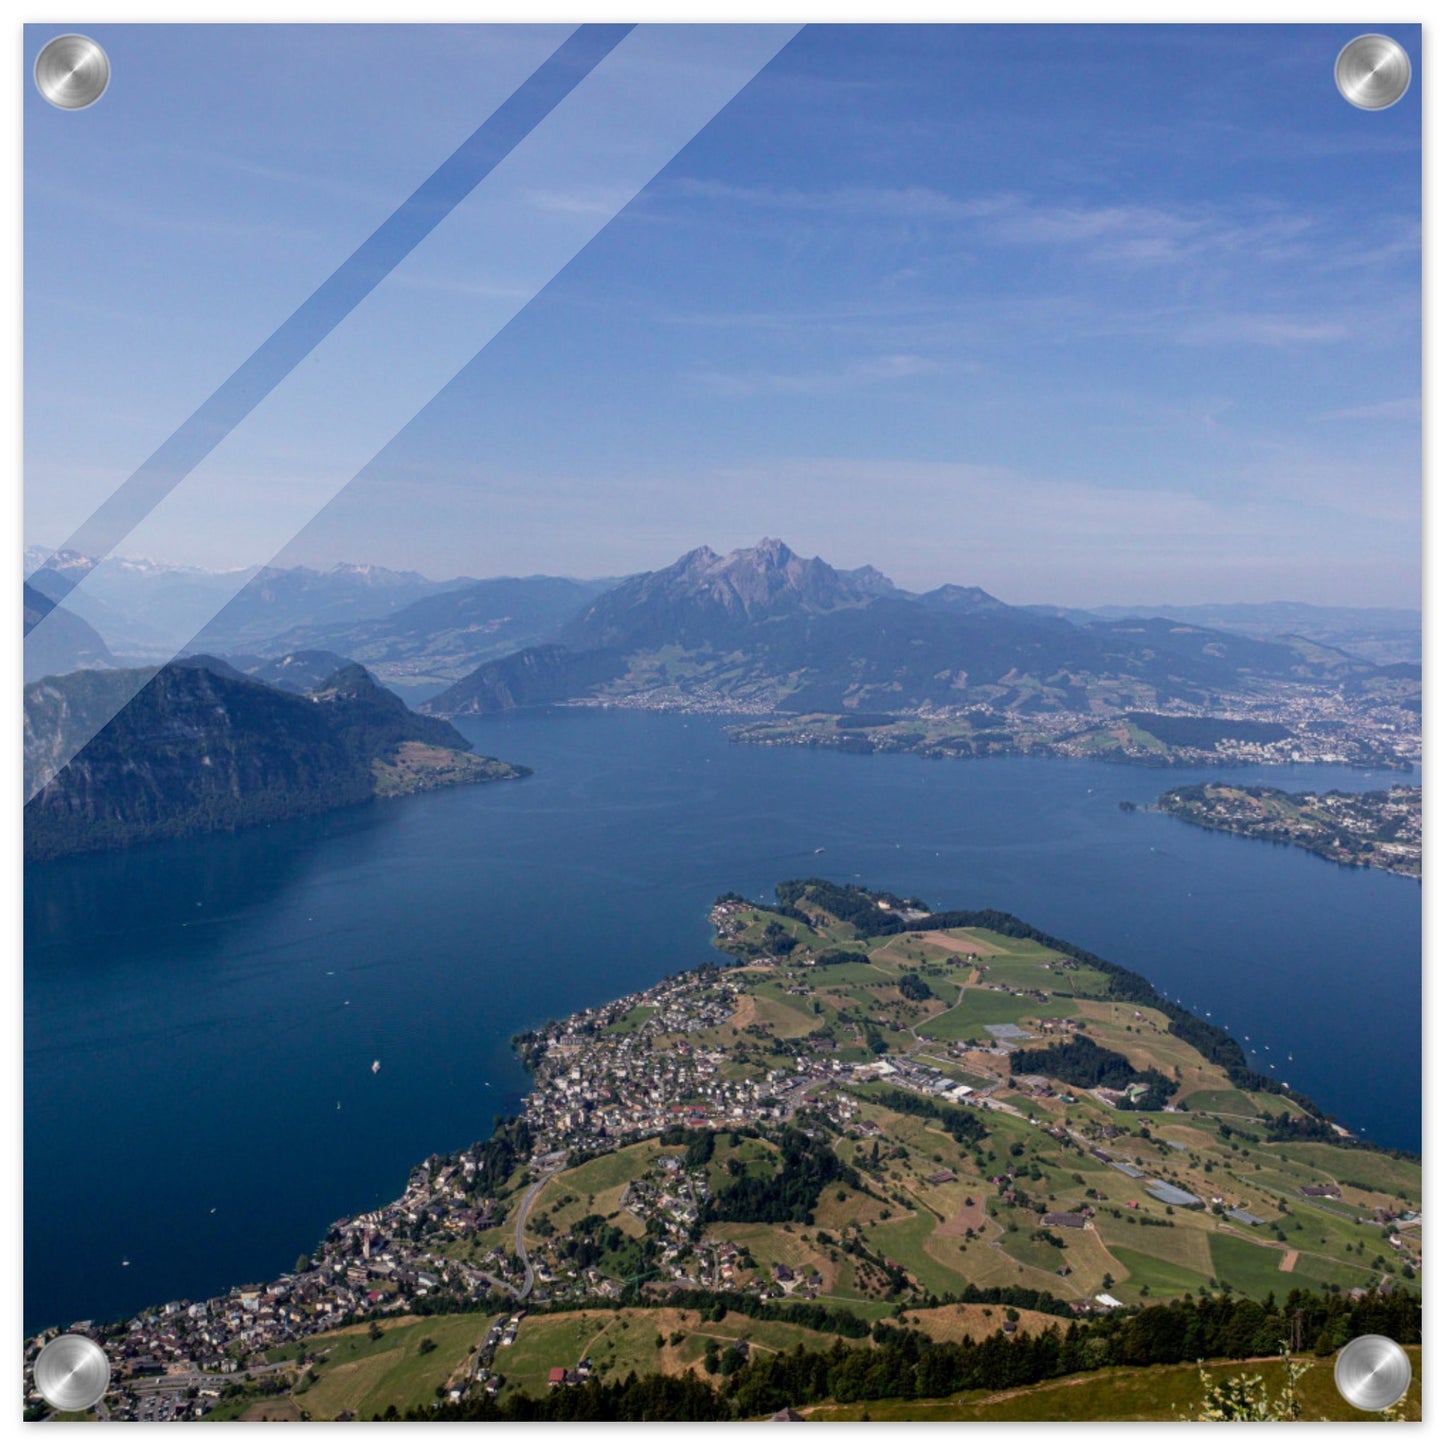 Acrylglasdruck Zentralschweiz: Atemberaubender Ausblick über den Vierwaldstättersee von der Rigi